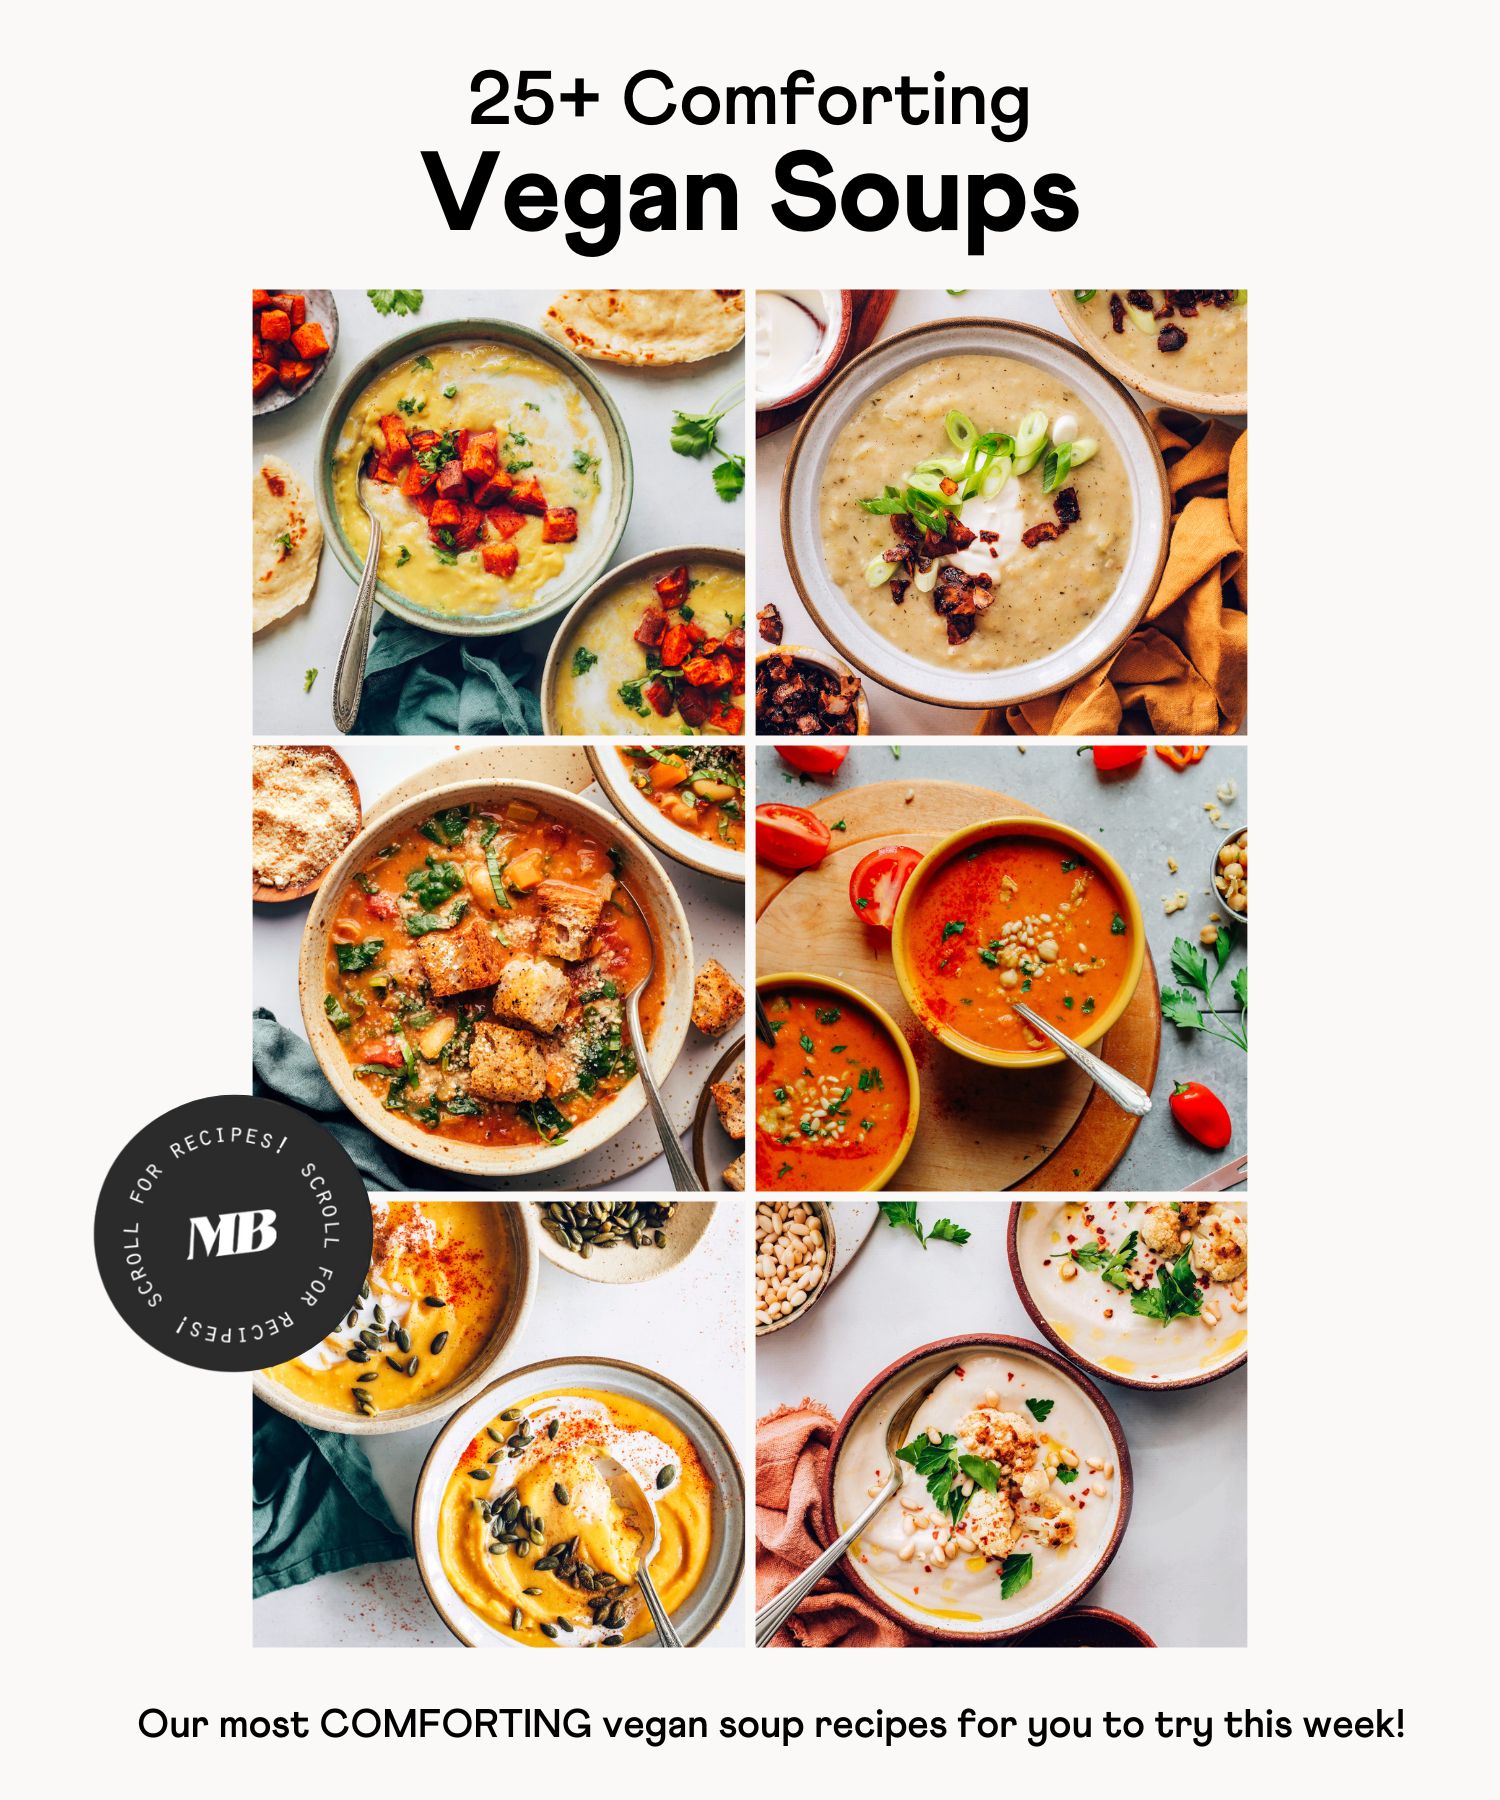 Images of 25+ comforting vegan soups